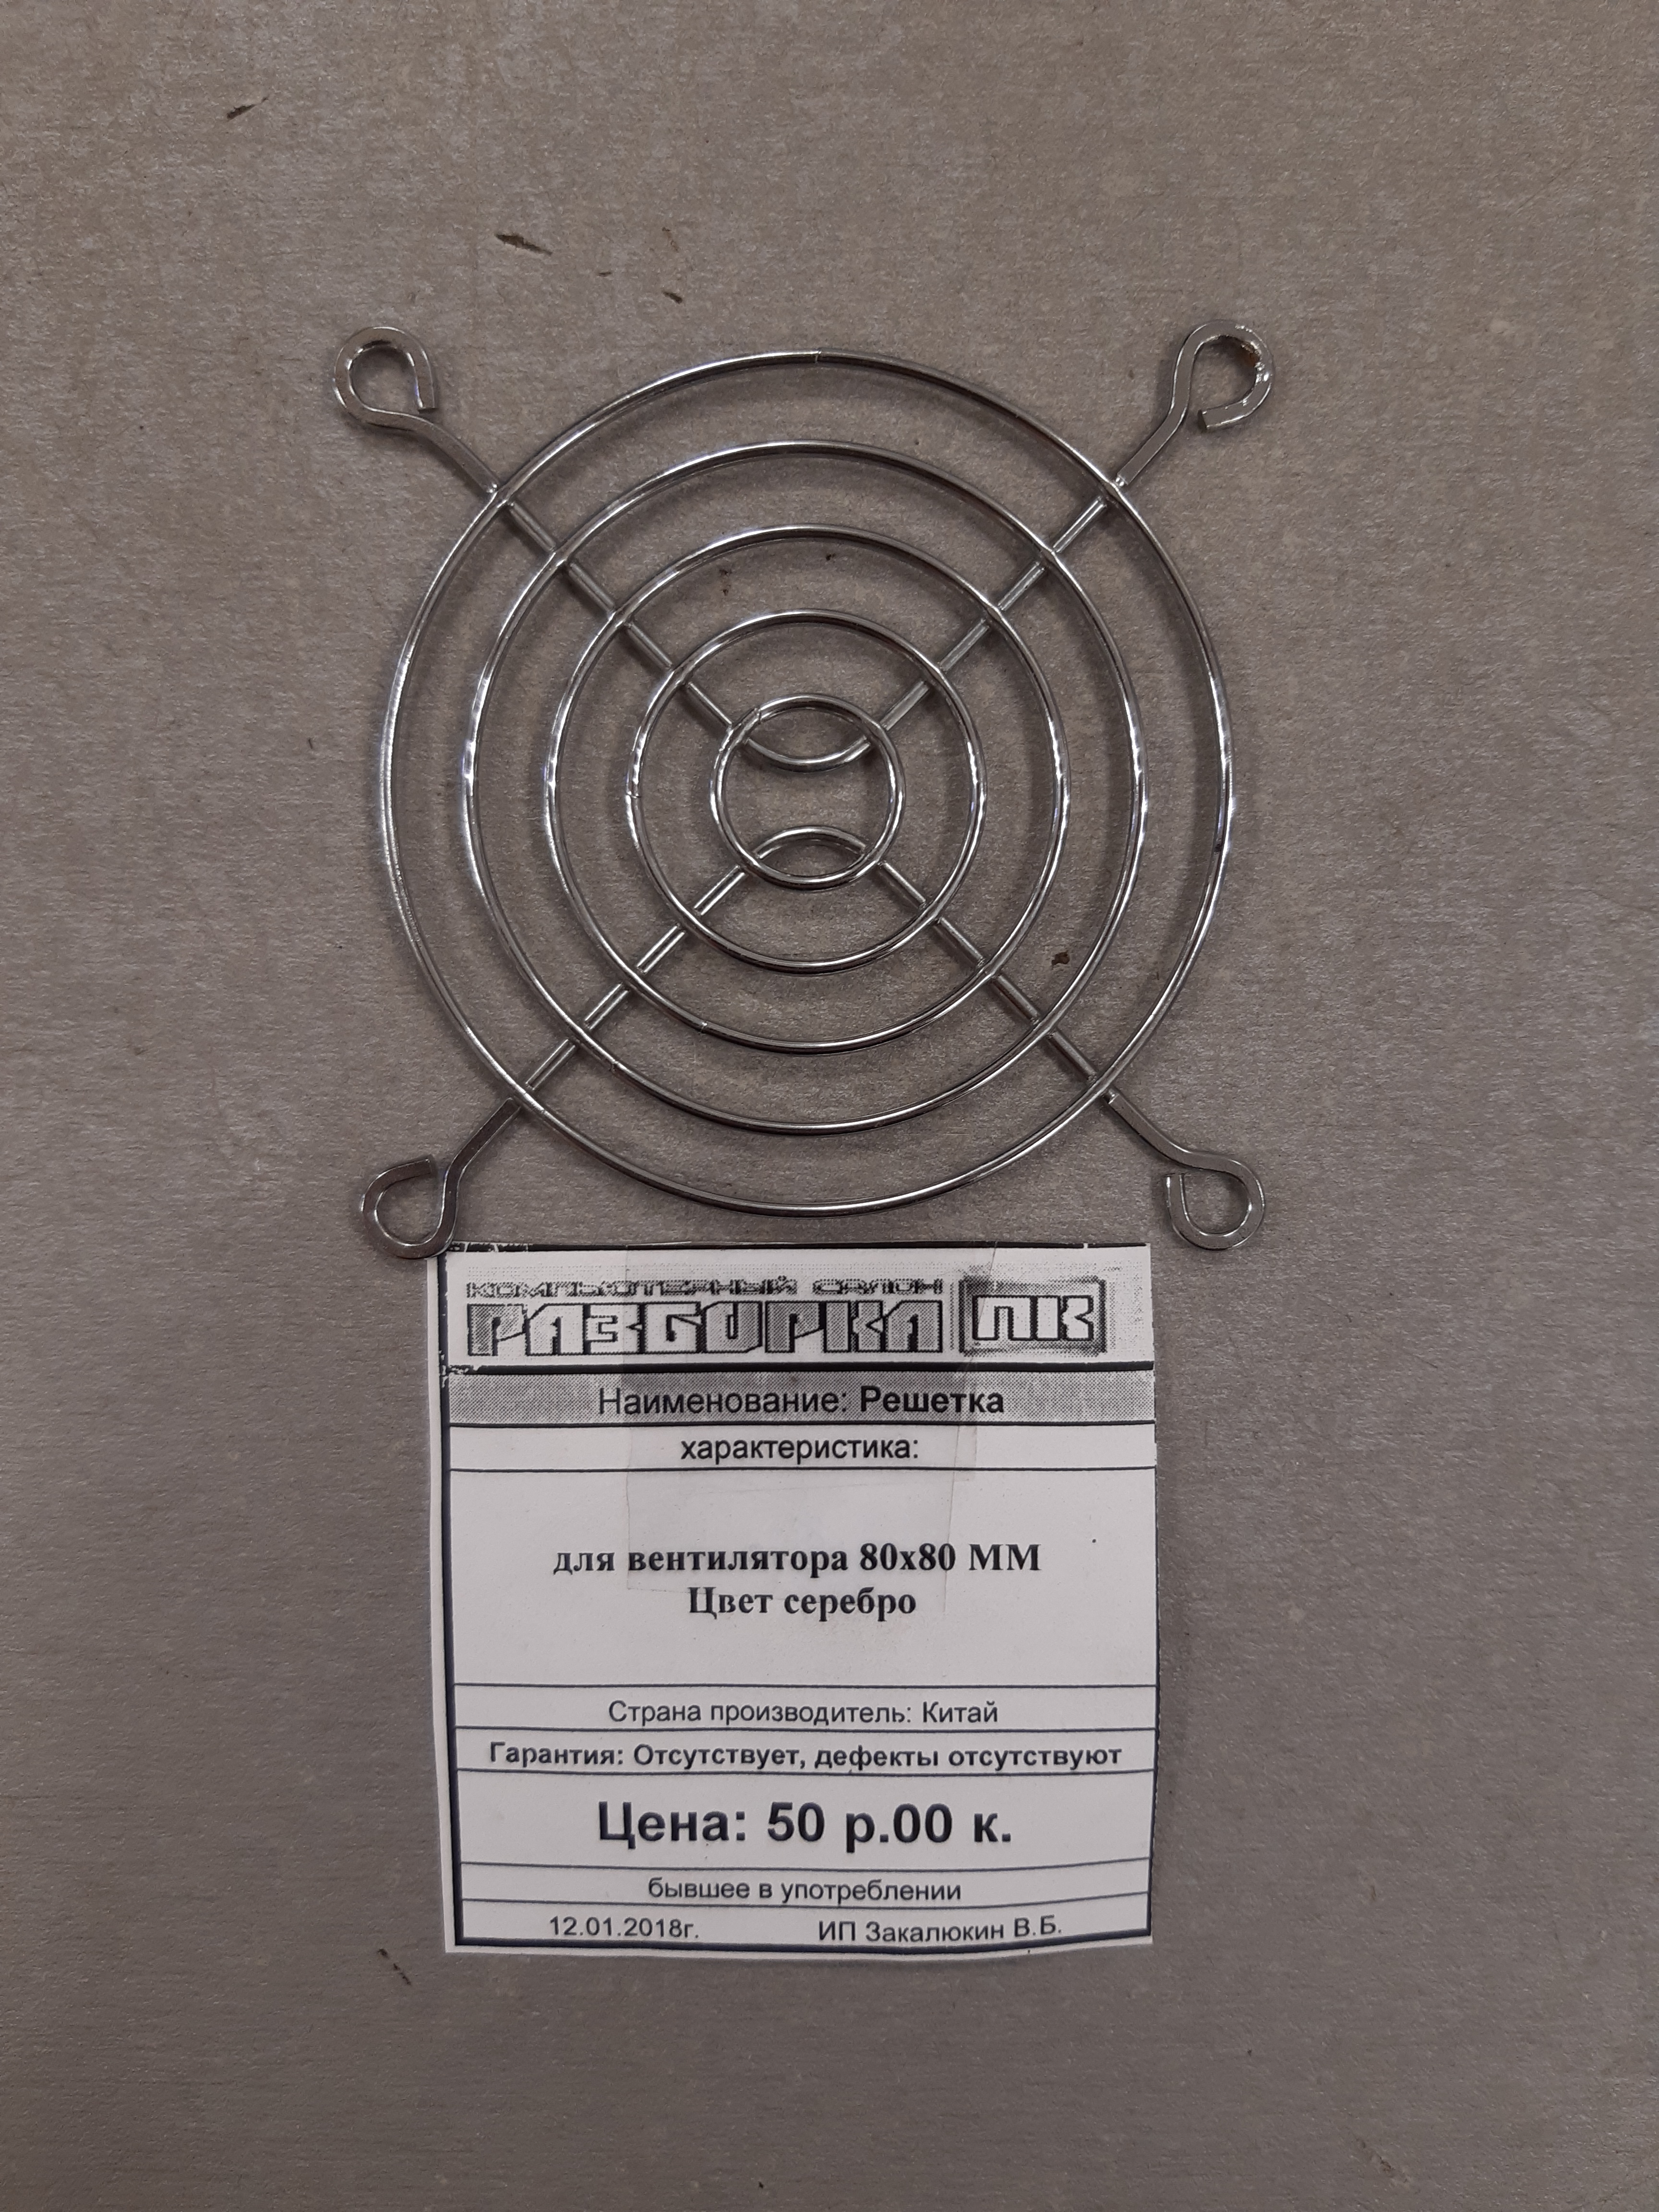 Решетка для вентилятора 80x80 MM